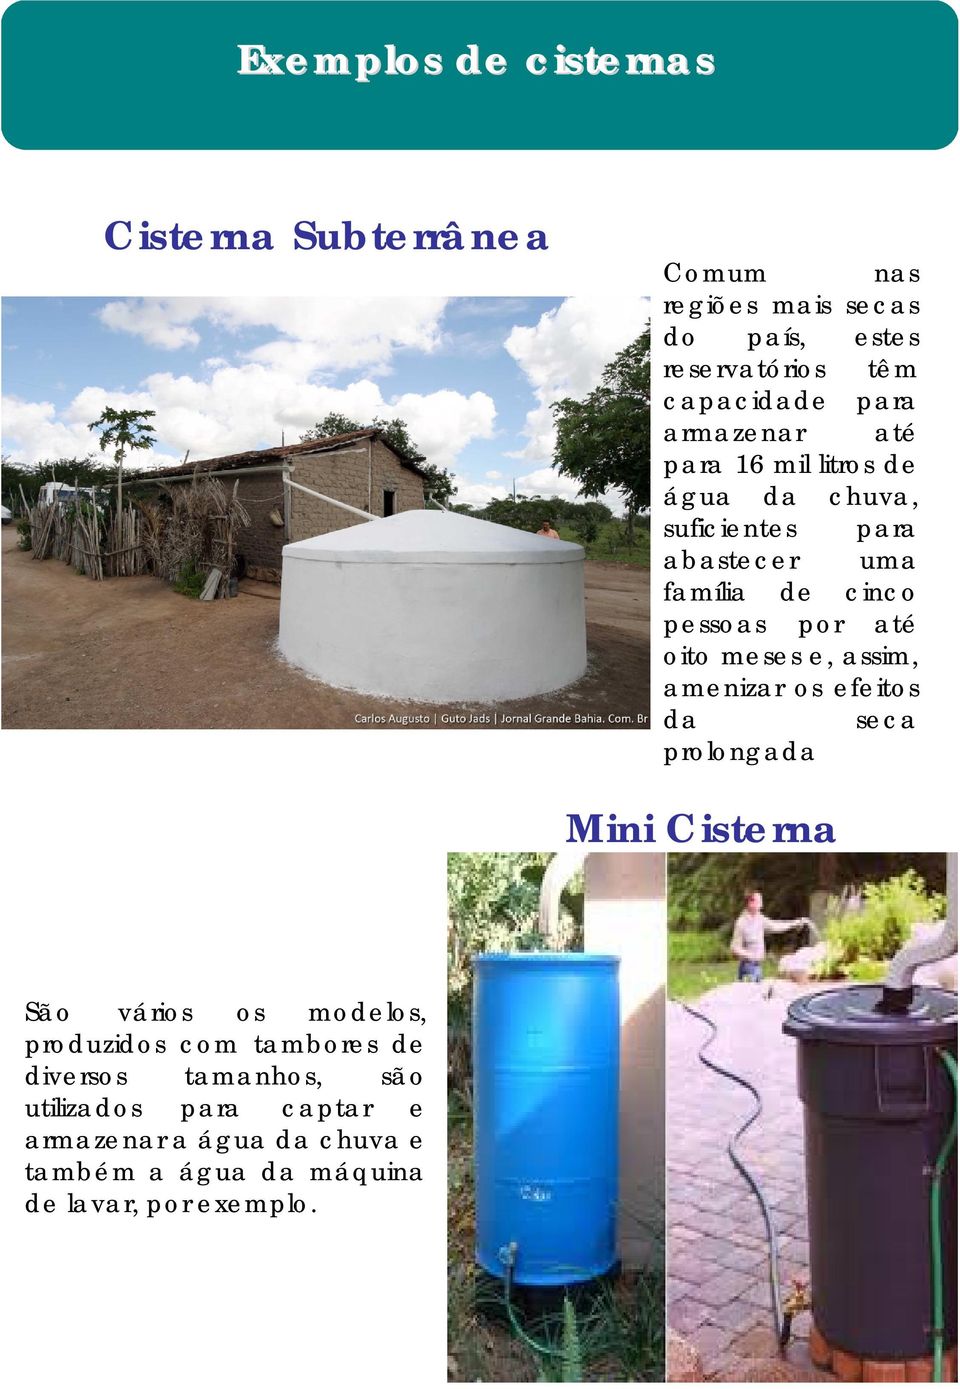 meses e, assim, amenizar os efeitos da seca prolongada Mini Cisterna São vários os modelos, produzidos com tambores de